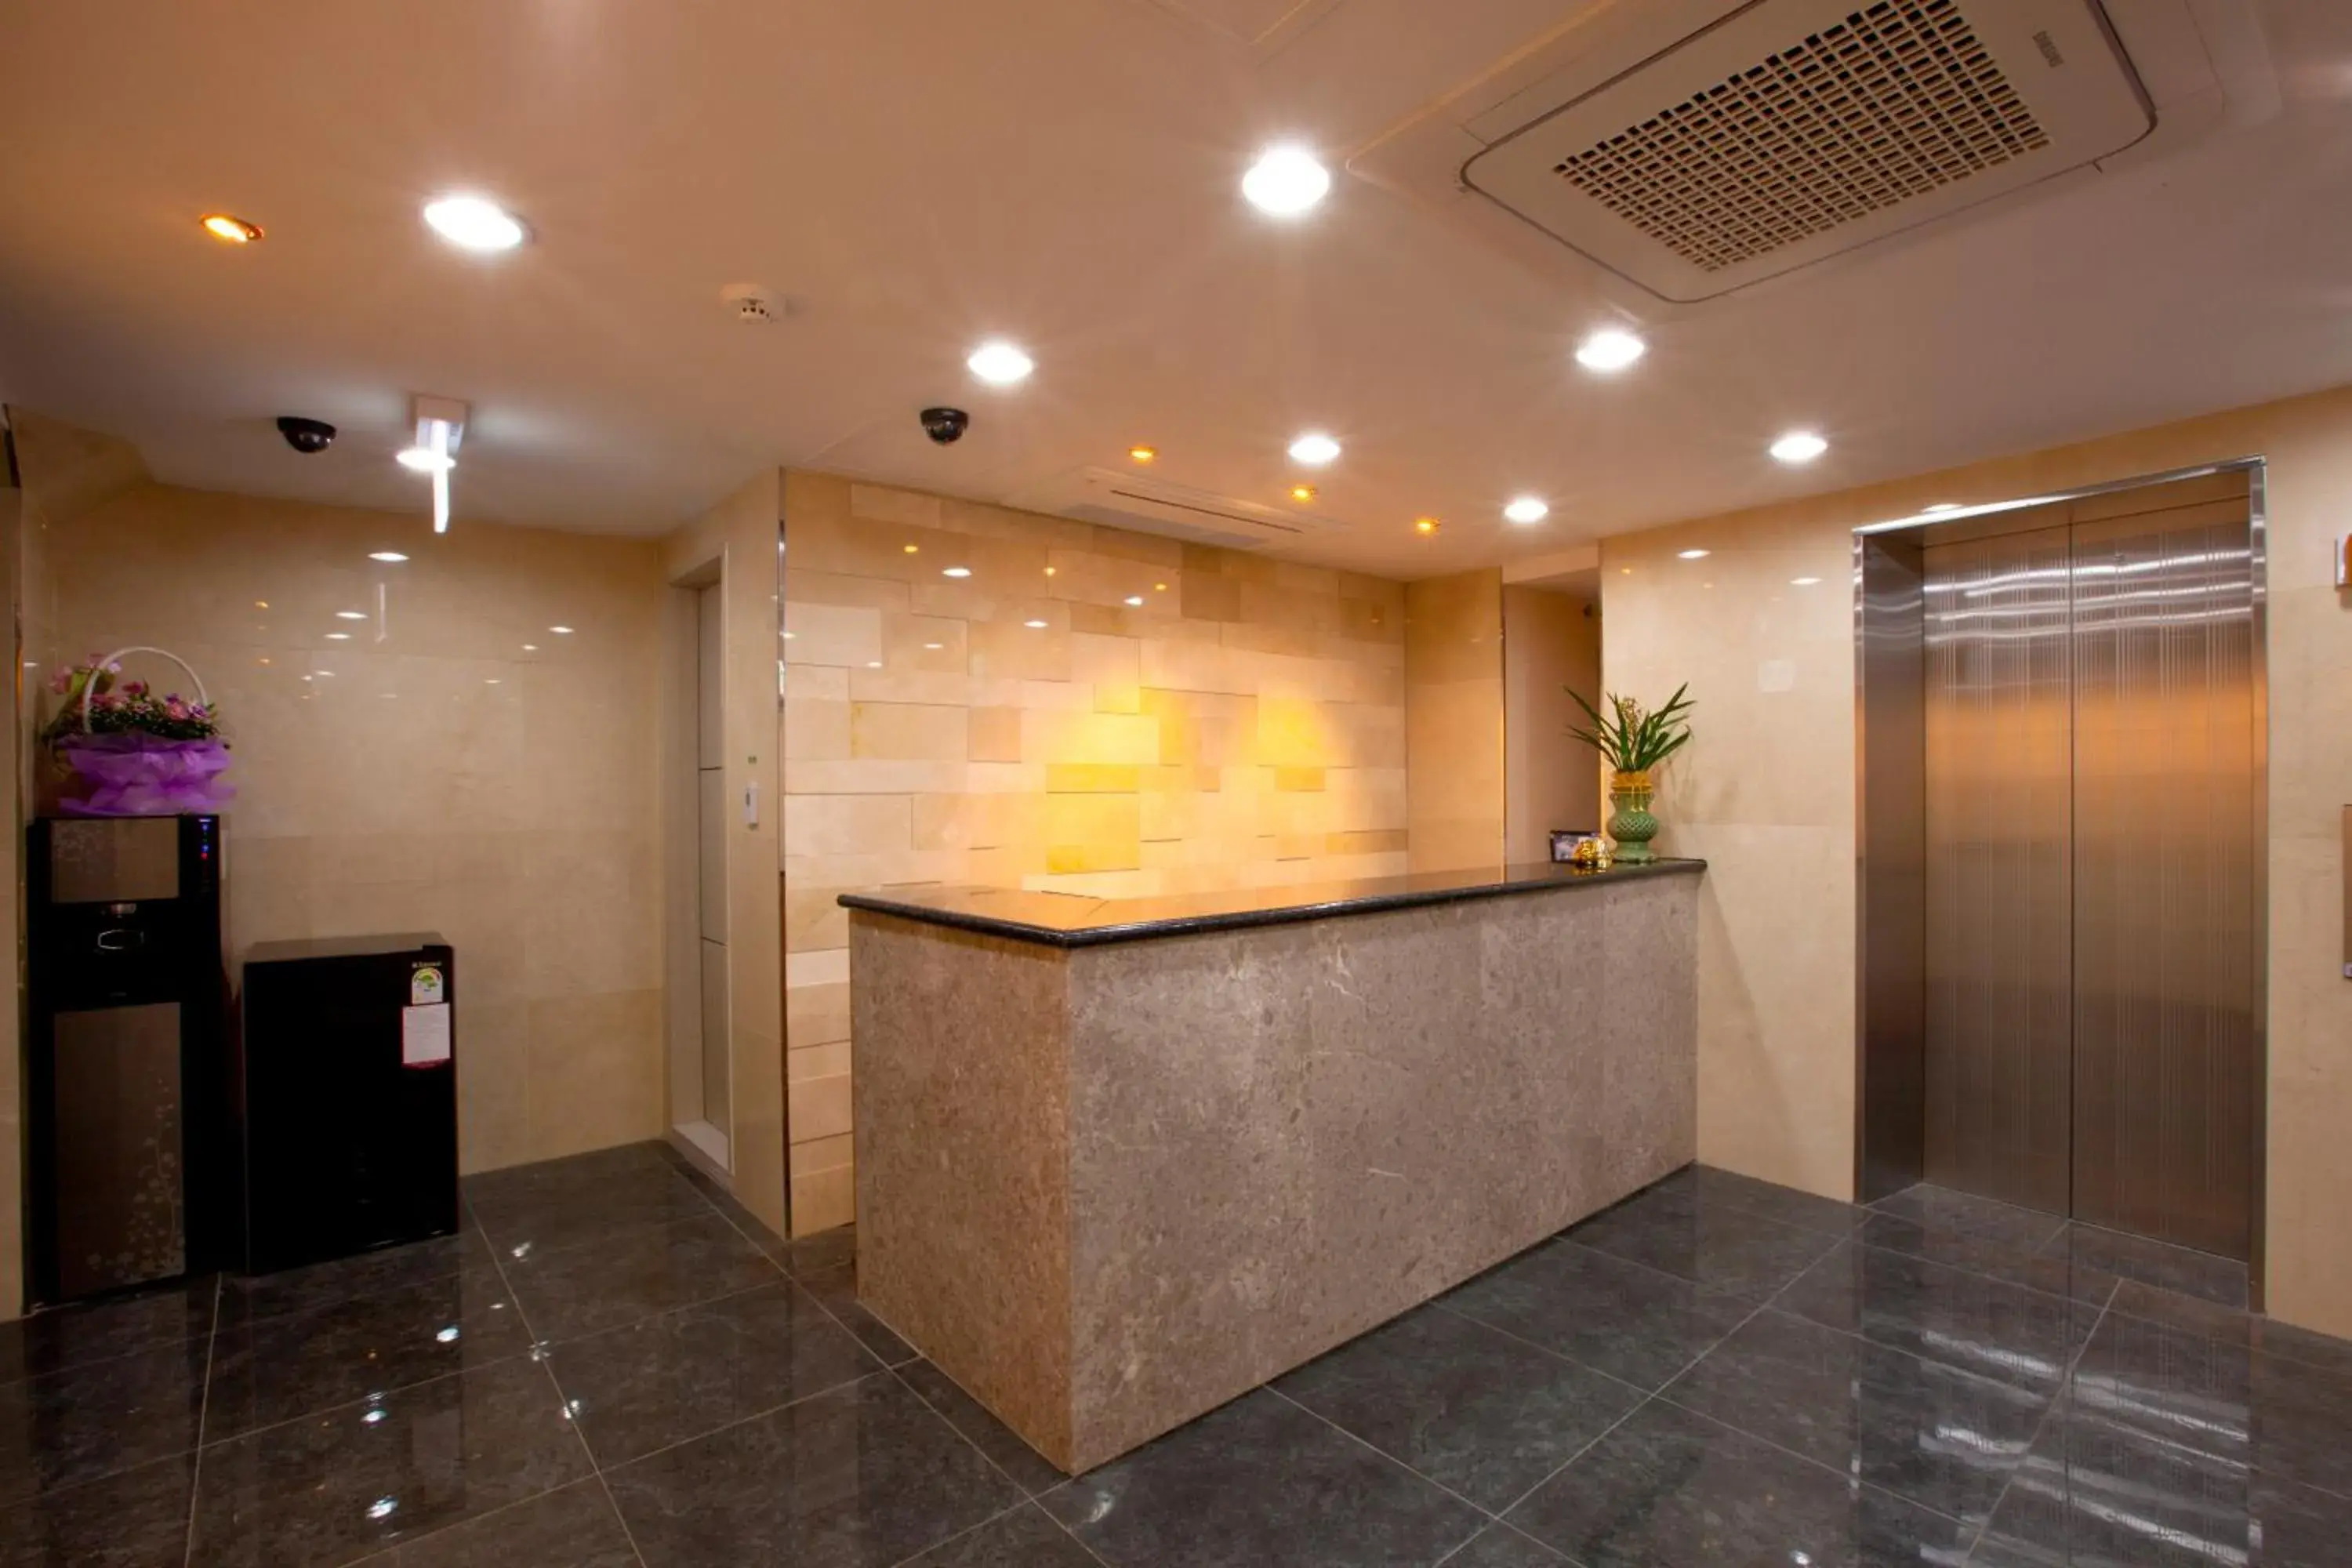 Lobby or reception, Lobby/Reception in Goodstay Hotel Daewoo Inn